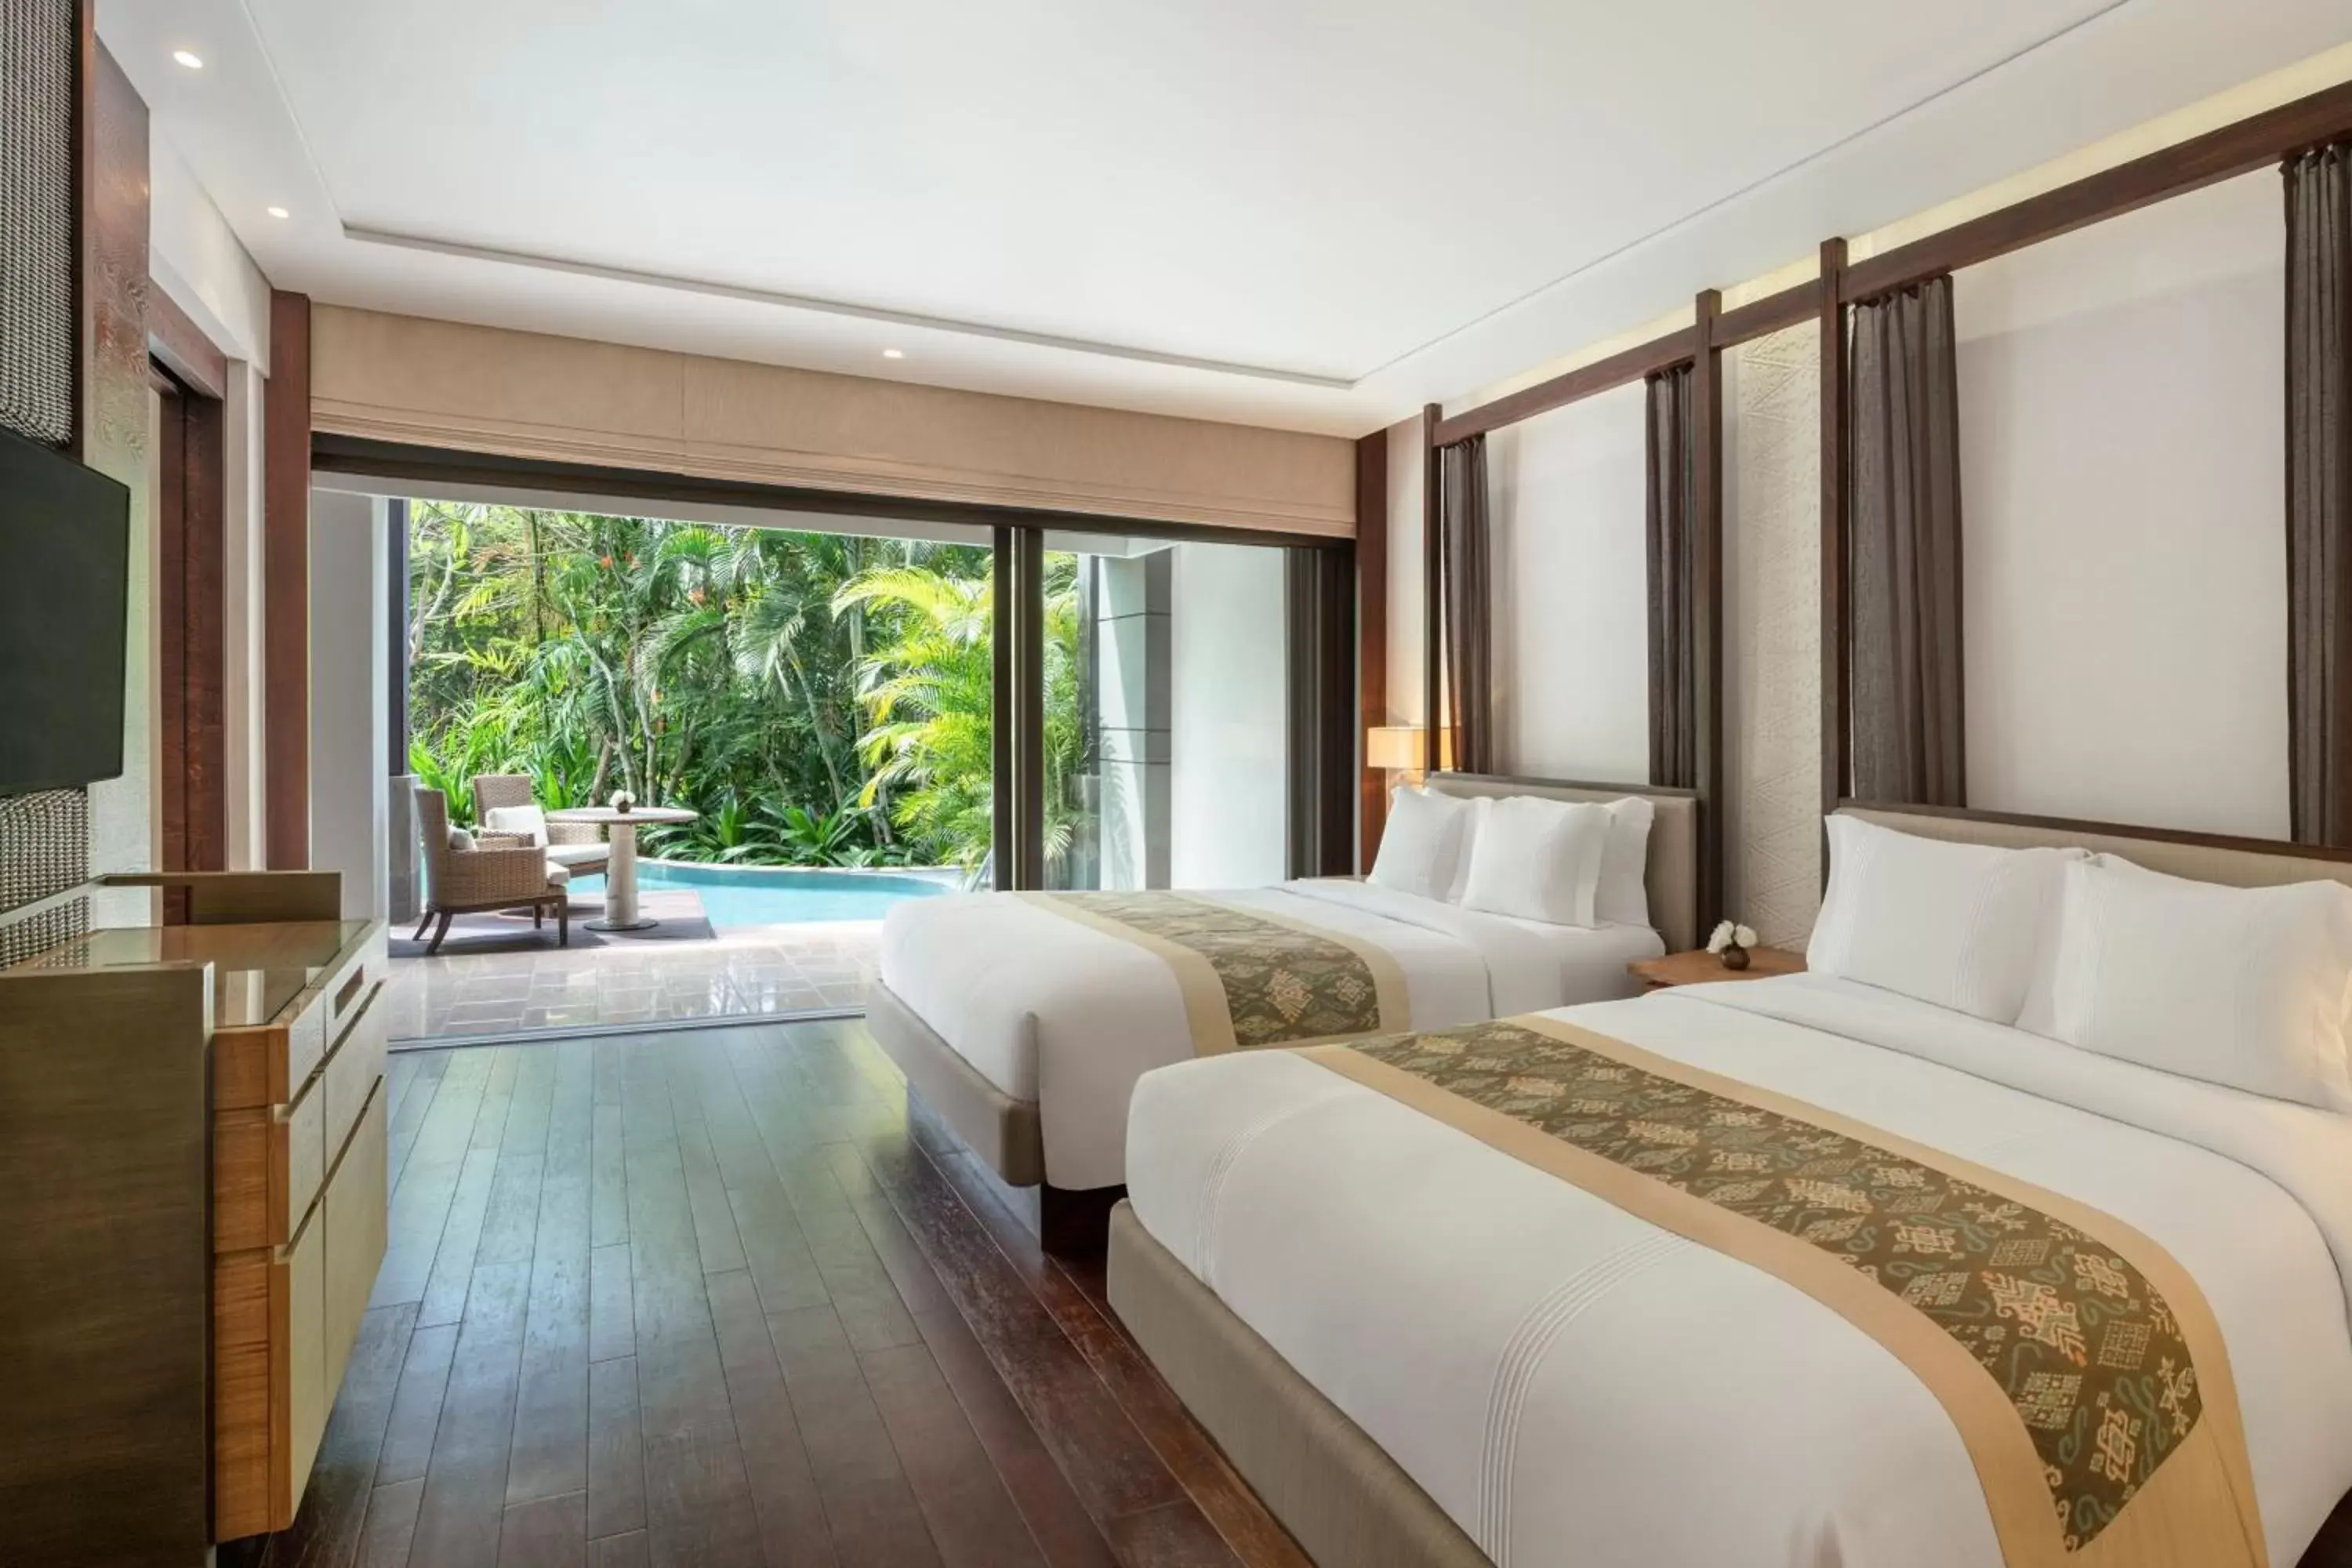 Swimming pool, Bed in The Ritz-Carlton Bali